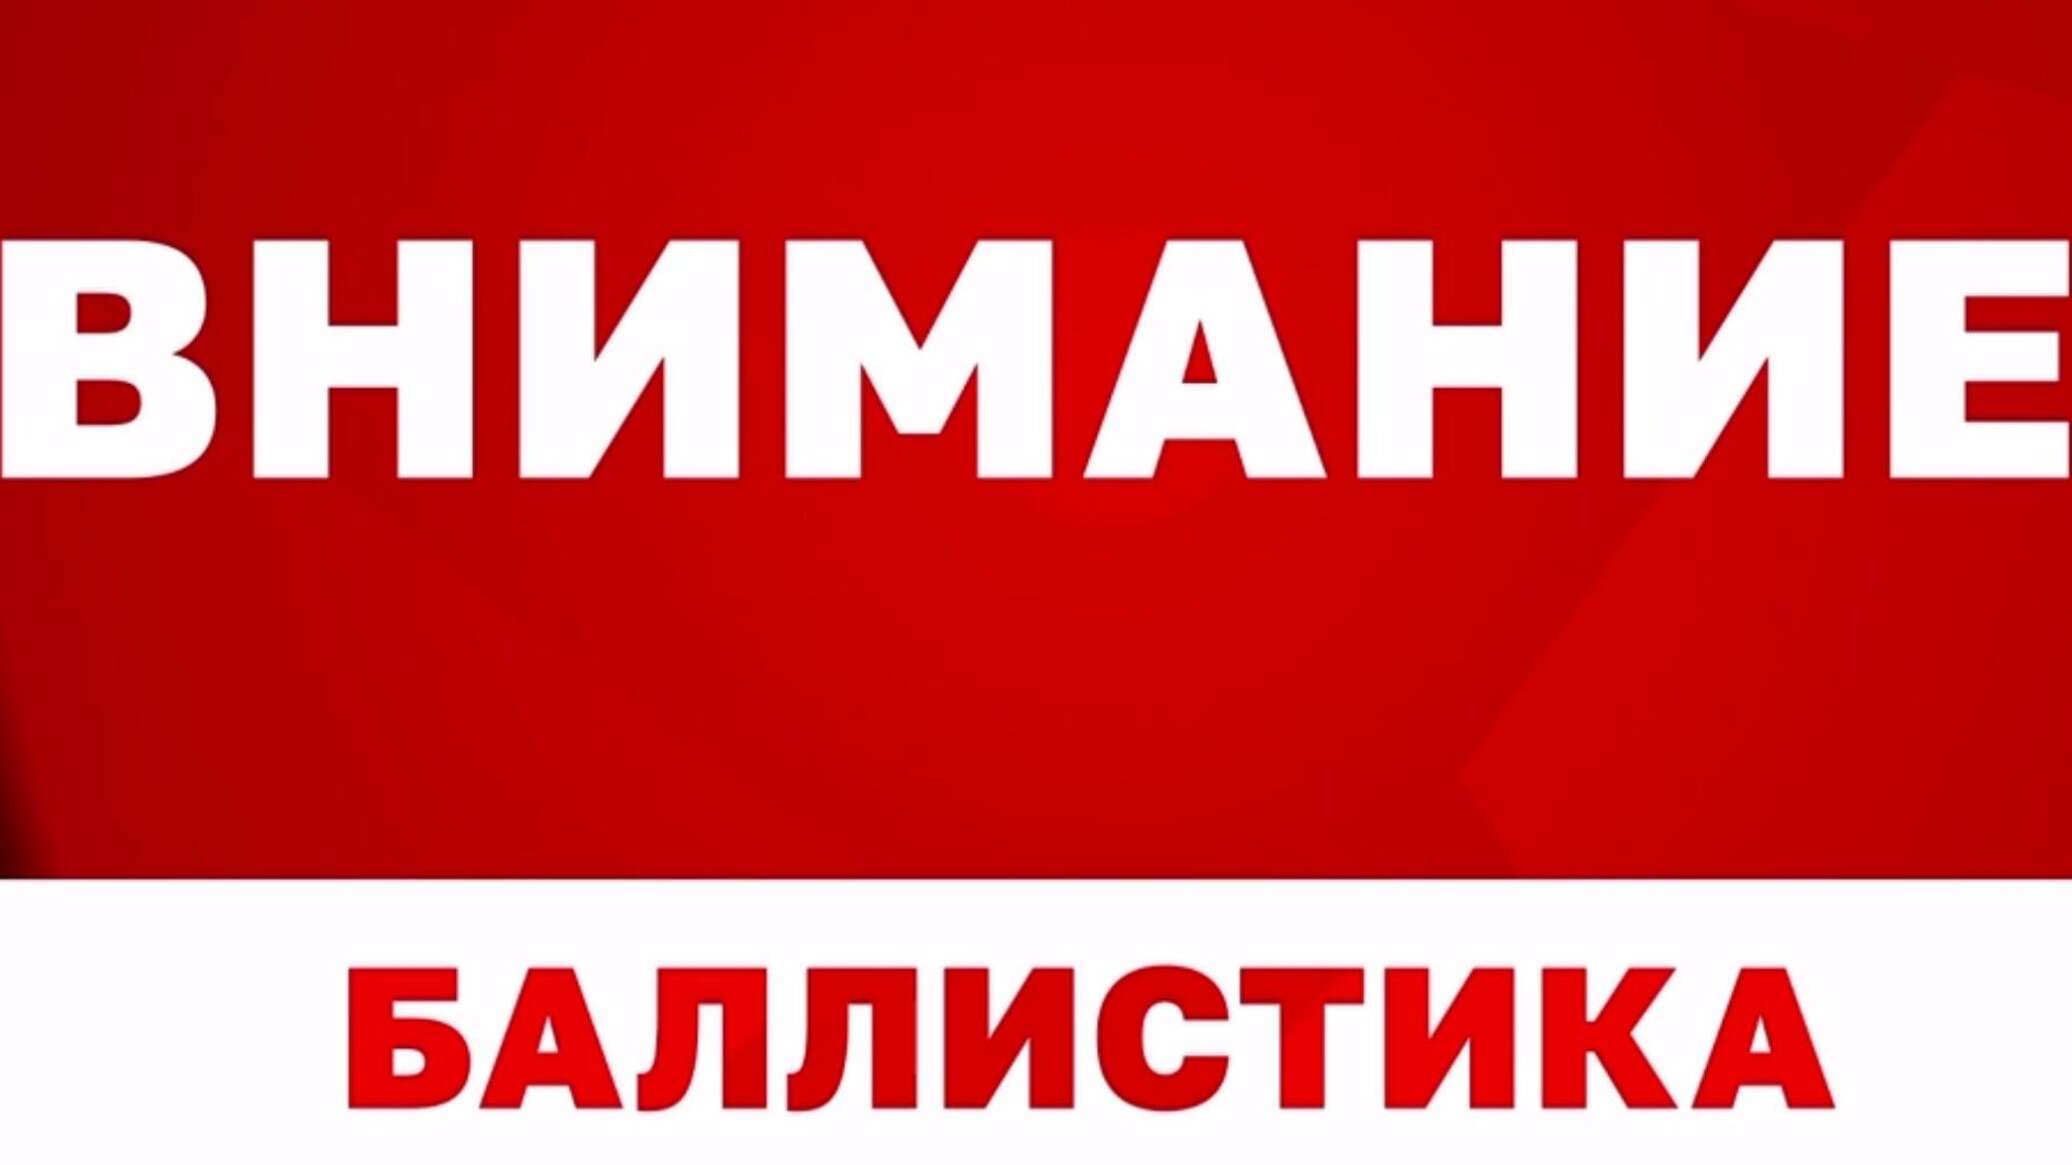 «Баллистика!»: В Севастополе появился новый сигнал оповещения